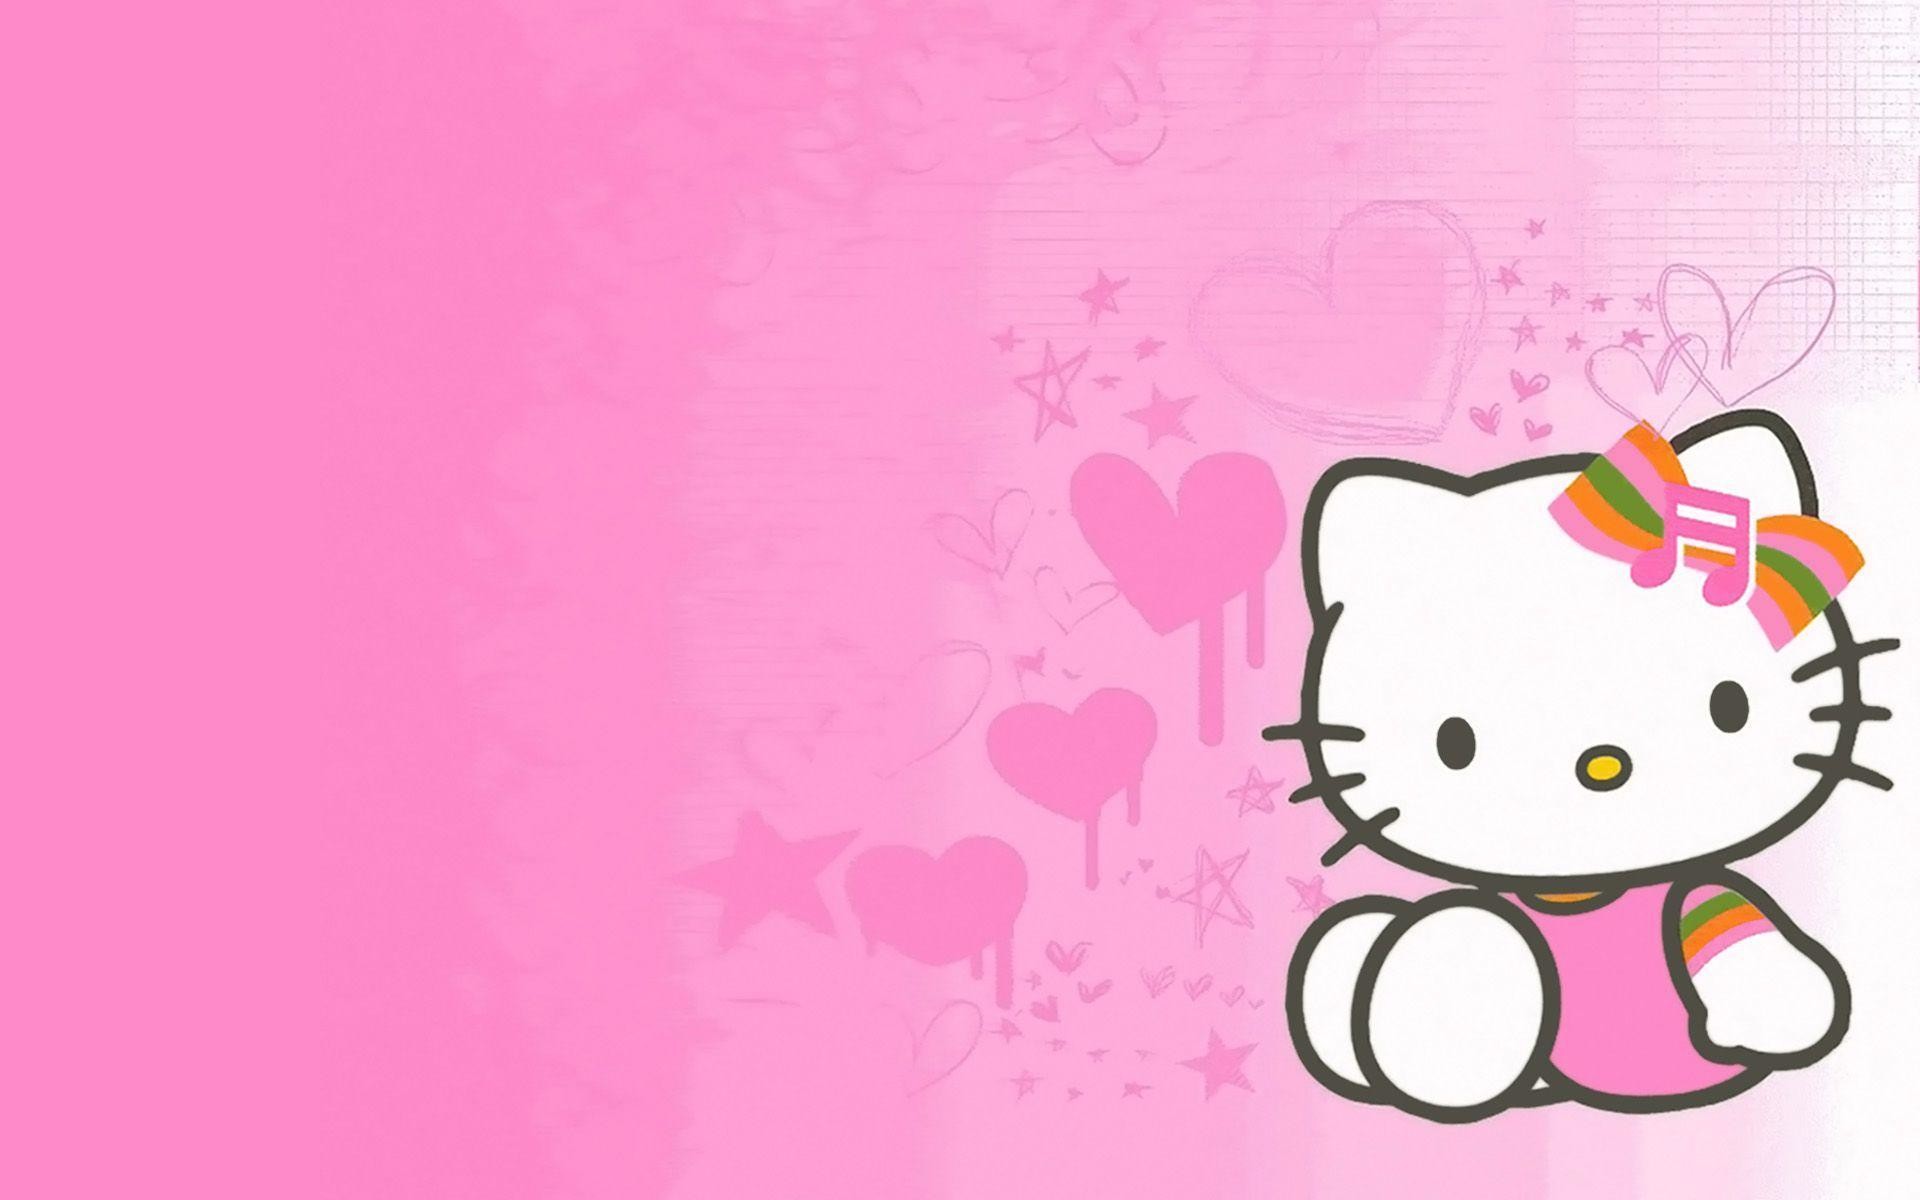 Hình nền Hello Kitty: Trở thành biểu tượng không thể thiếu của văn hóa pop Nhật Bản, Hello Kitty được yêu thích trên khắp thế giới bởi vẻ đáng yêu và tinh nghịch của mình. Hãy xem hình nền Hello Kitty để mang đến cảm giác nhẹ nhàng và đáng yêu cho ngày mới!